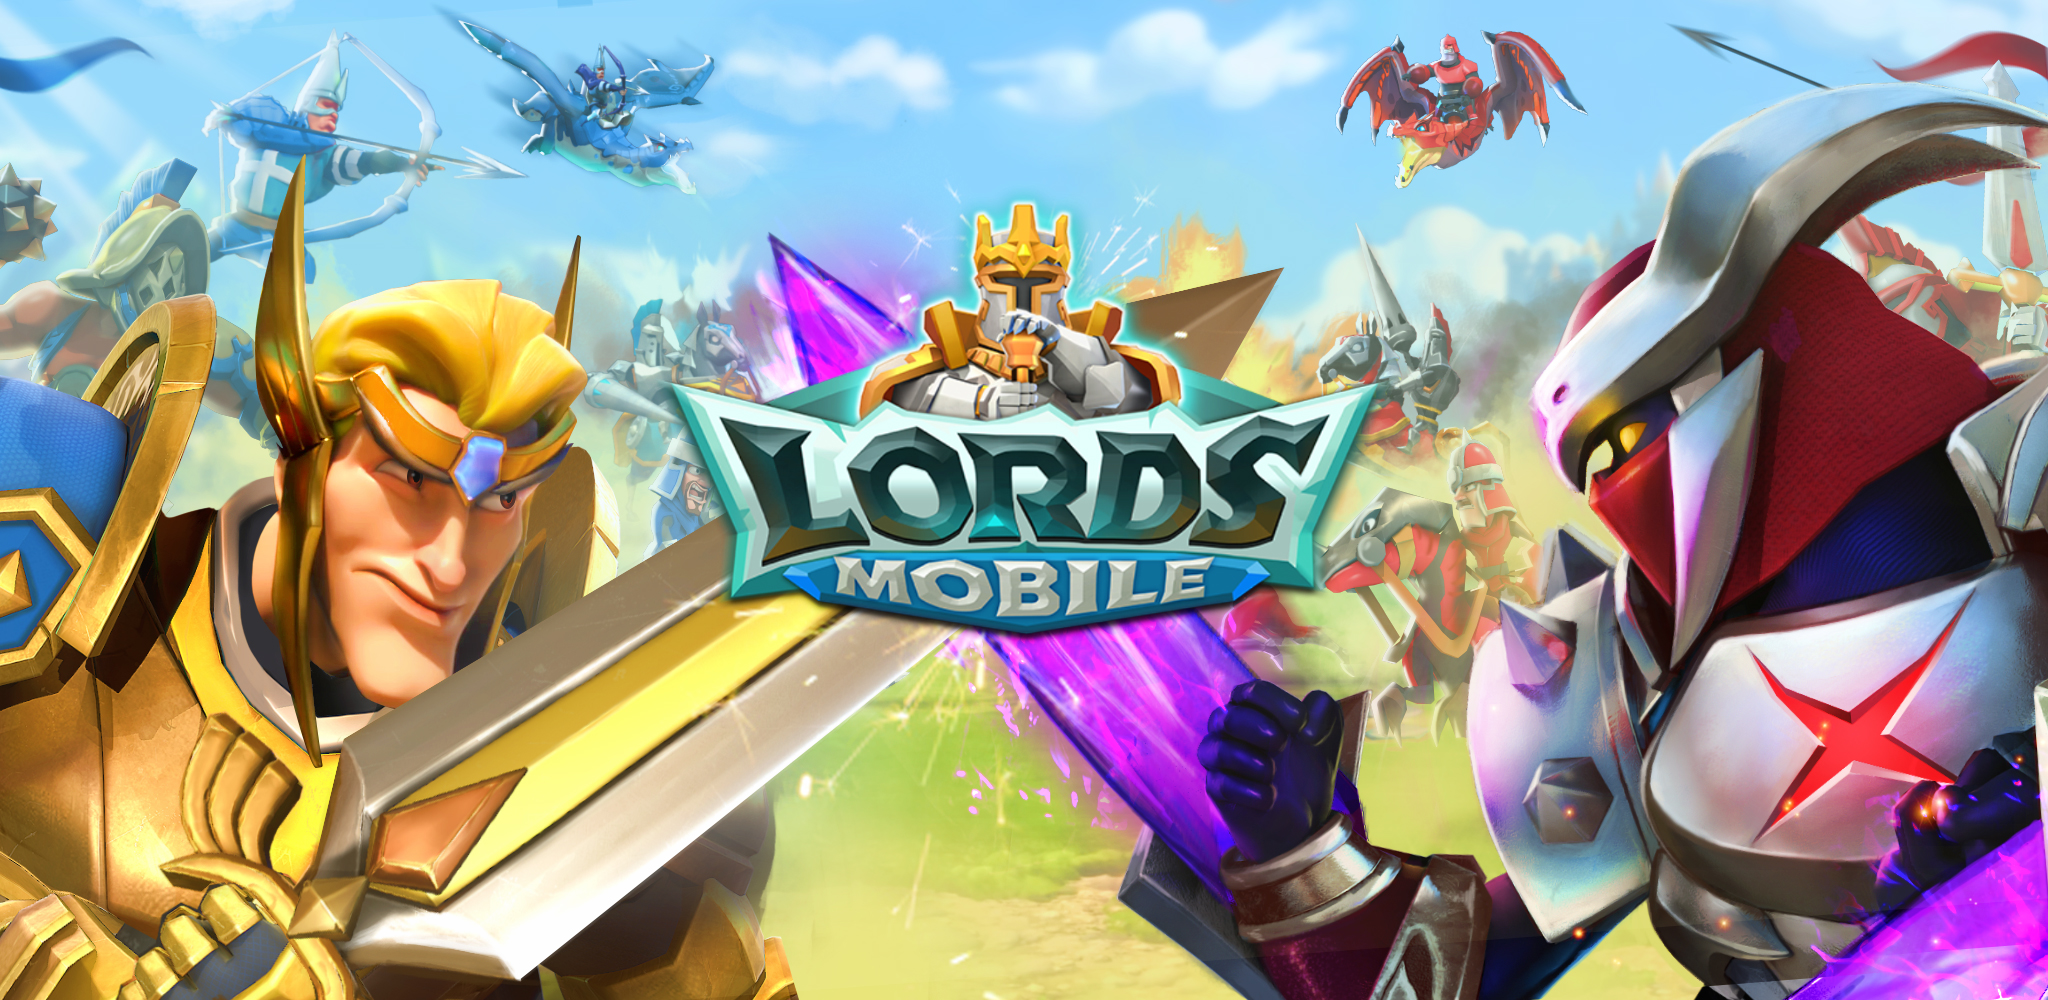 фото:  “Спасибо, что вы с нами!”: создатели Lords Mobile благодарят игроков за многолетнюю преданность и дарят подарки на День Благодарения